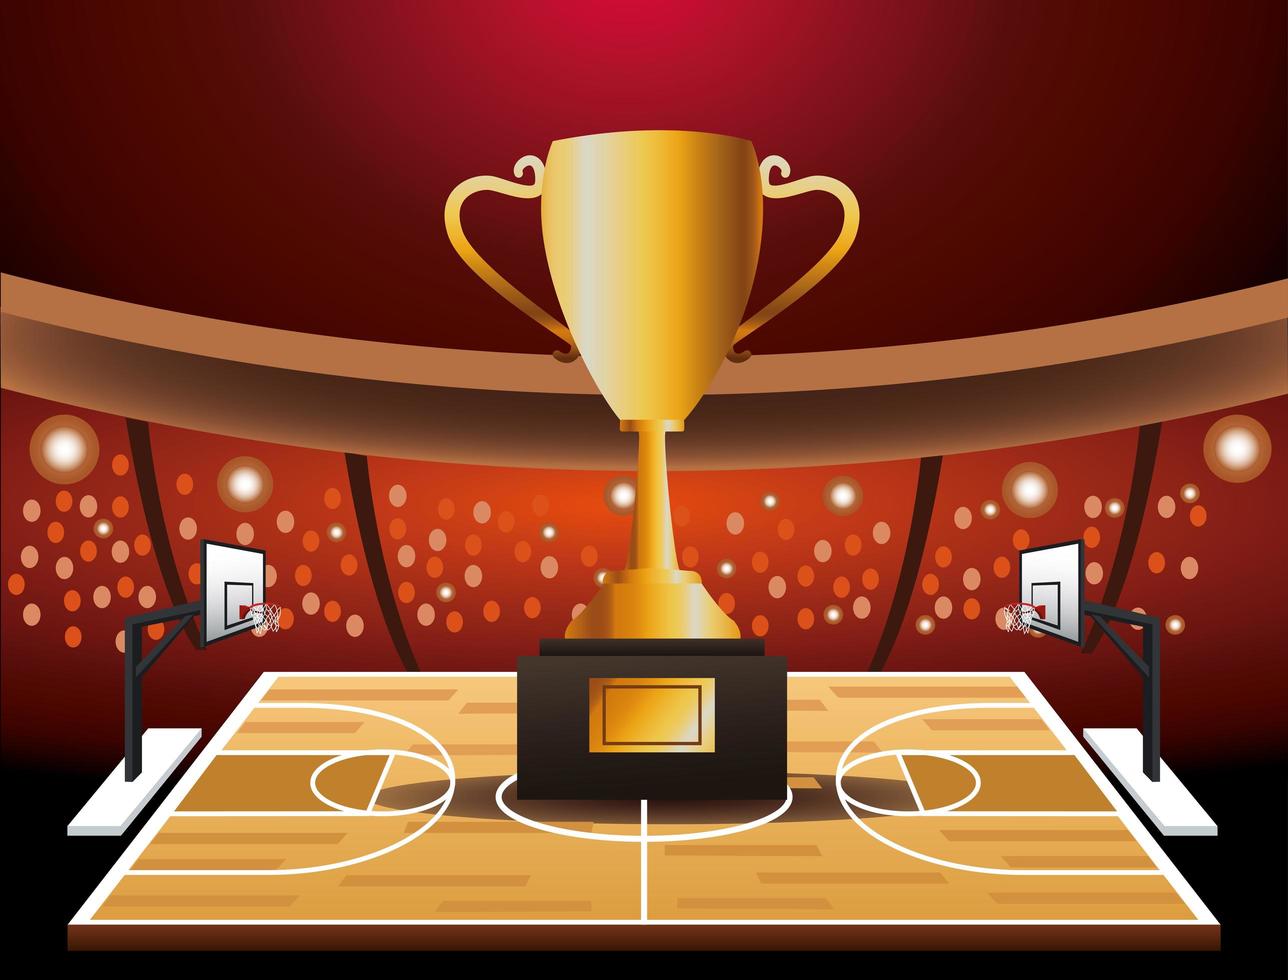 Banner de torneo de baloncesto con trofeo. vector